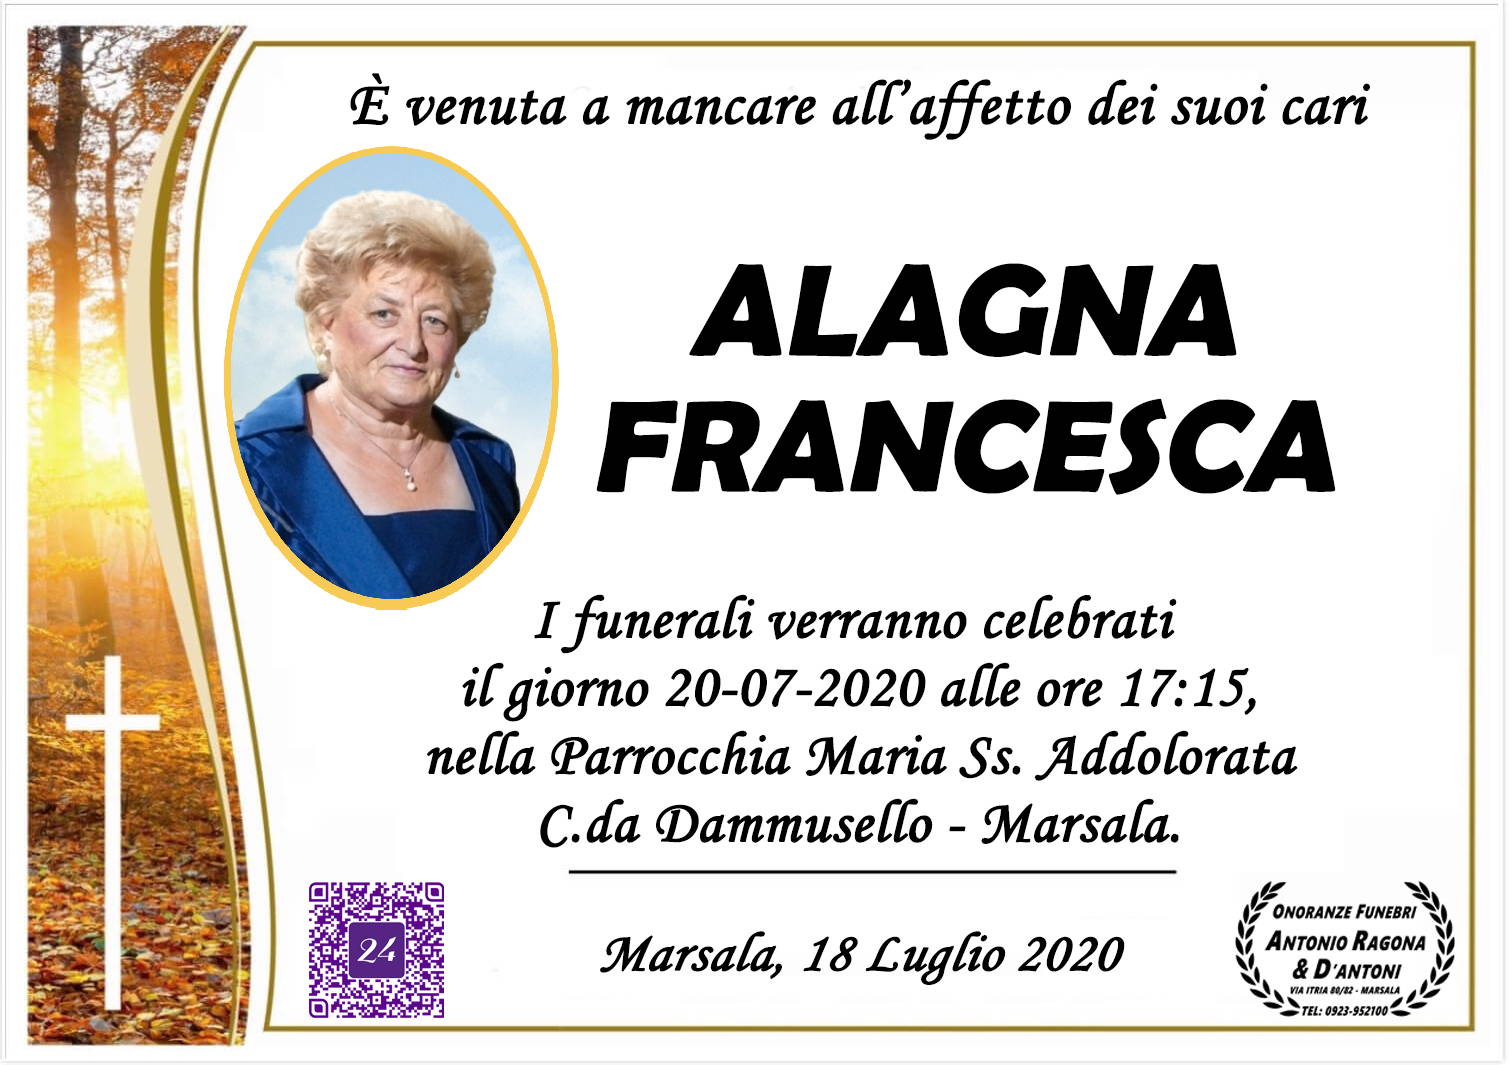 Francesca Alagna